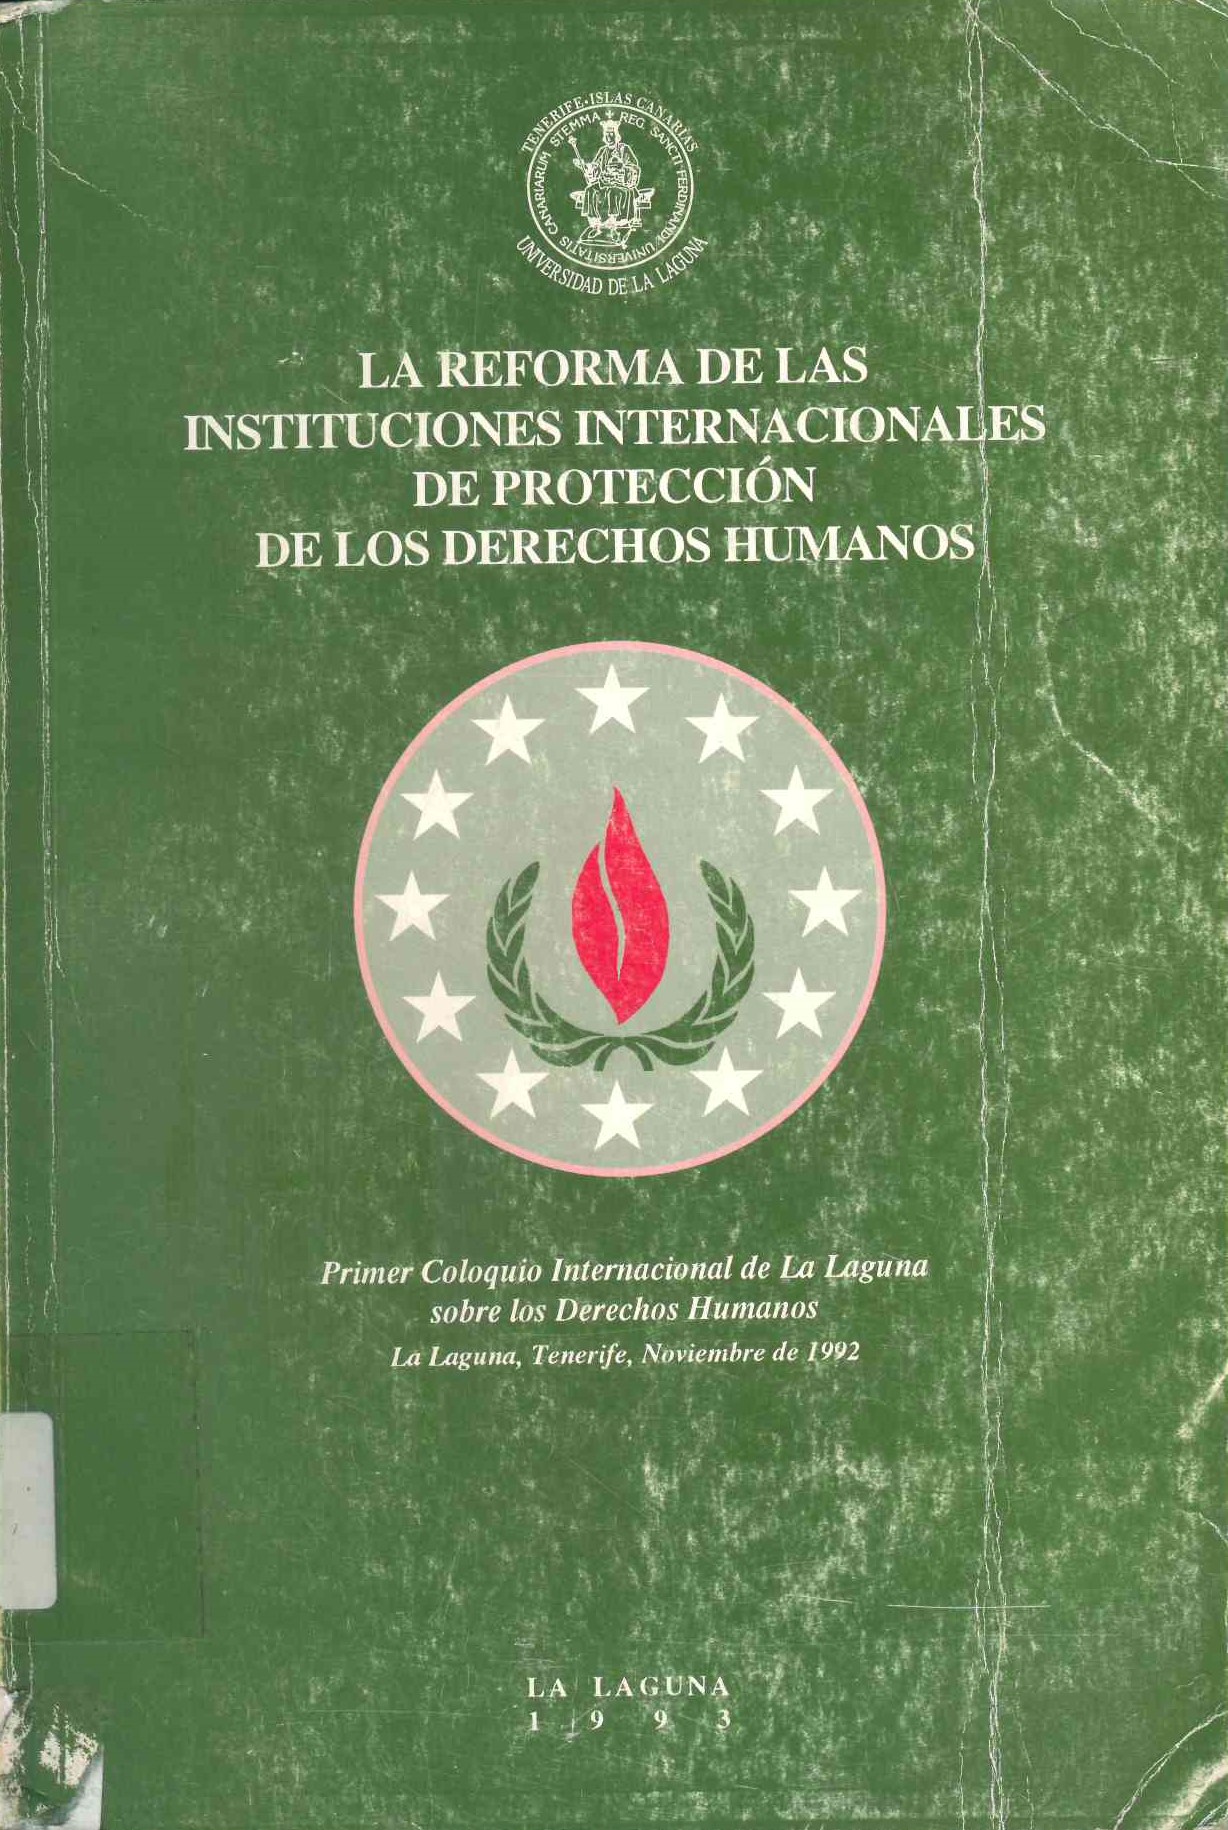 La reforma de las instituciones internacionales de protección de los derechos humanos : primer coloquio internacional de La Laguna sobre los derechos humanos.